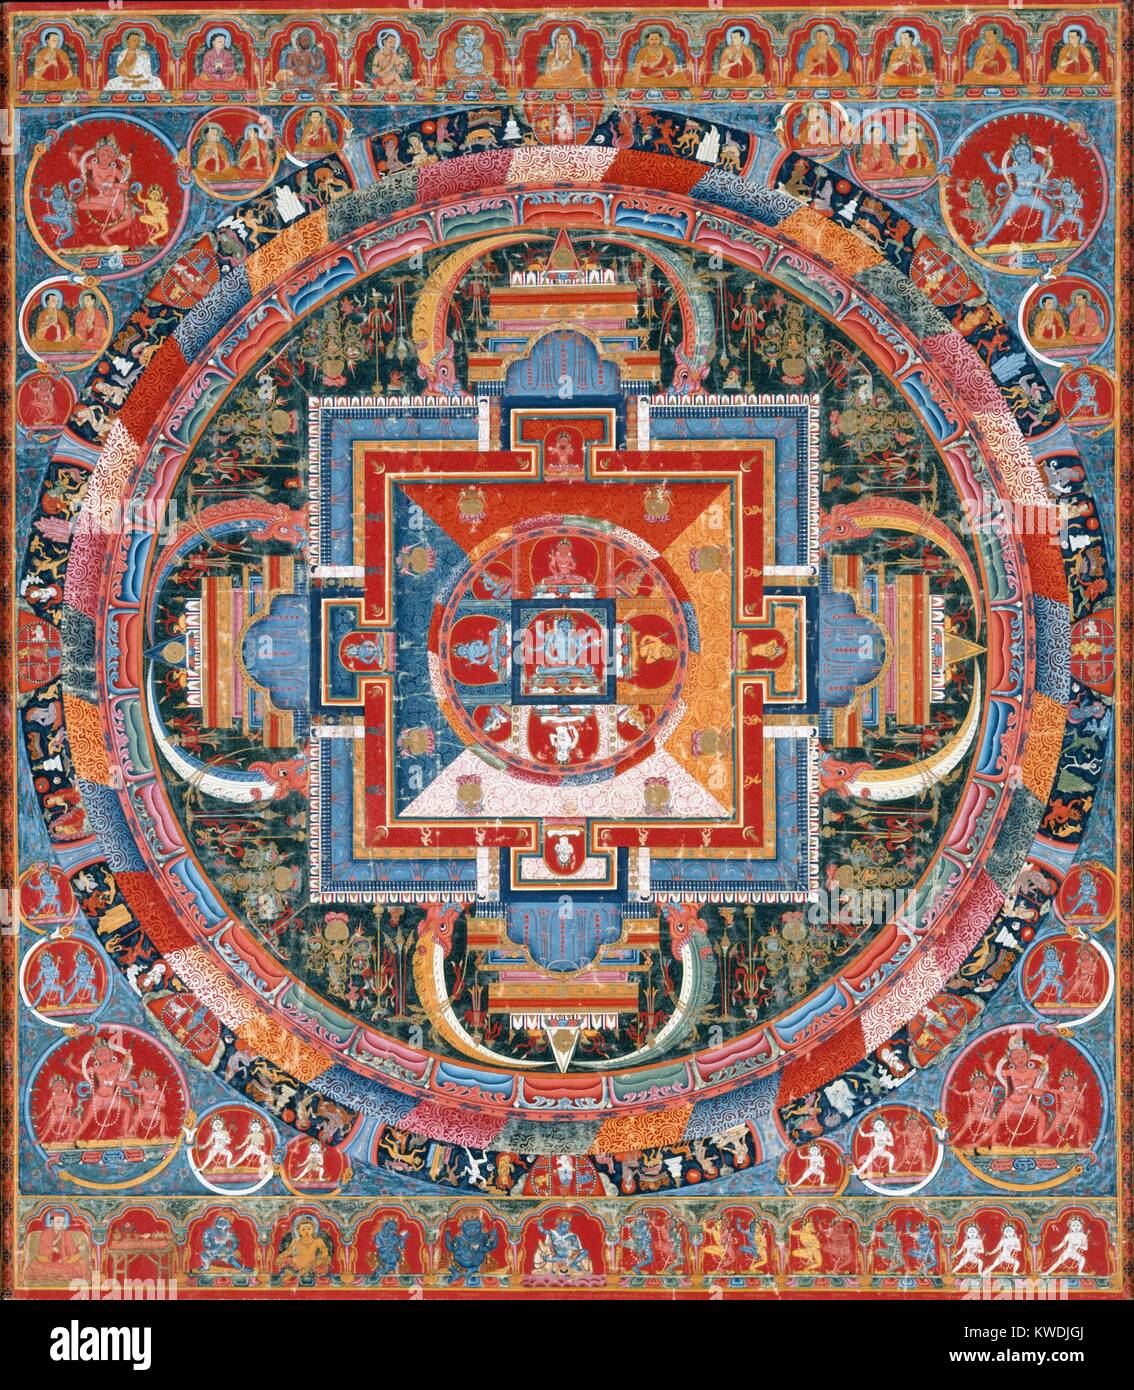 MANDELA DE JNANADAKINI, Tibet, bouddhiste, 1370-1400, peinture, de carré sur le coton. Le centre de six-armé devi (déesse), Jnanadakini, est entourée de huit émanations du devi, qui correspondent aux couleurs du mandala's quatre quadrants. Le tangka est remplie avec beaucoup de figures : divinités, lamas, moines dakinis, mahasiddhas (BSLOC et  2017 16 14) Banque D'Images